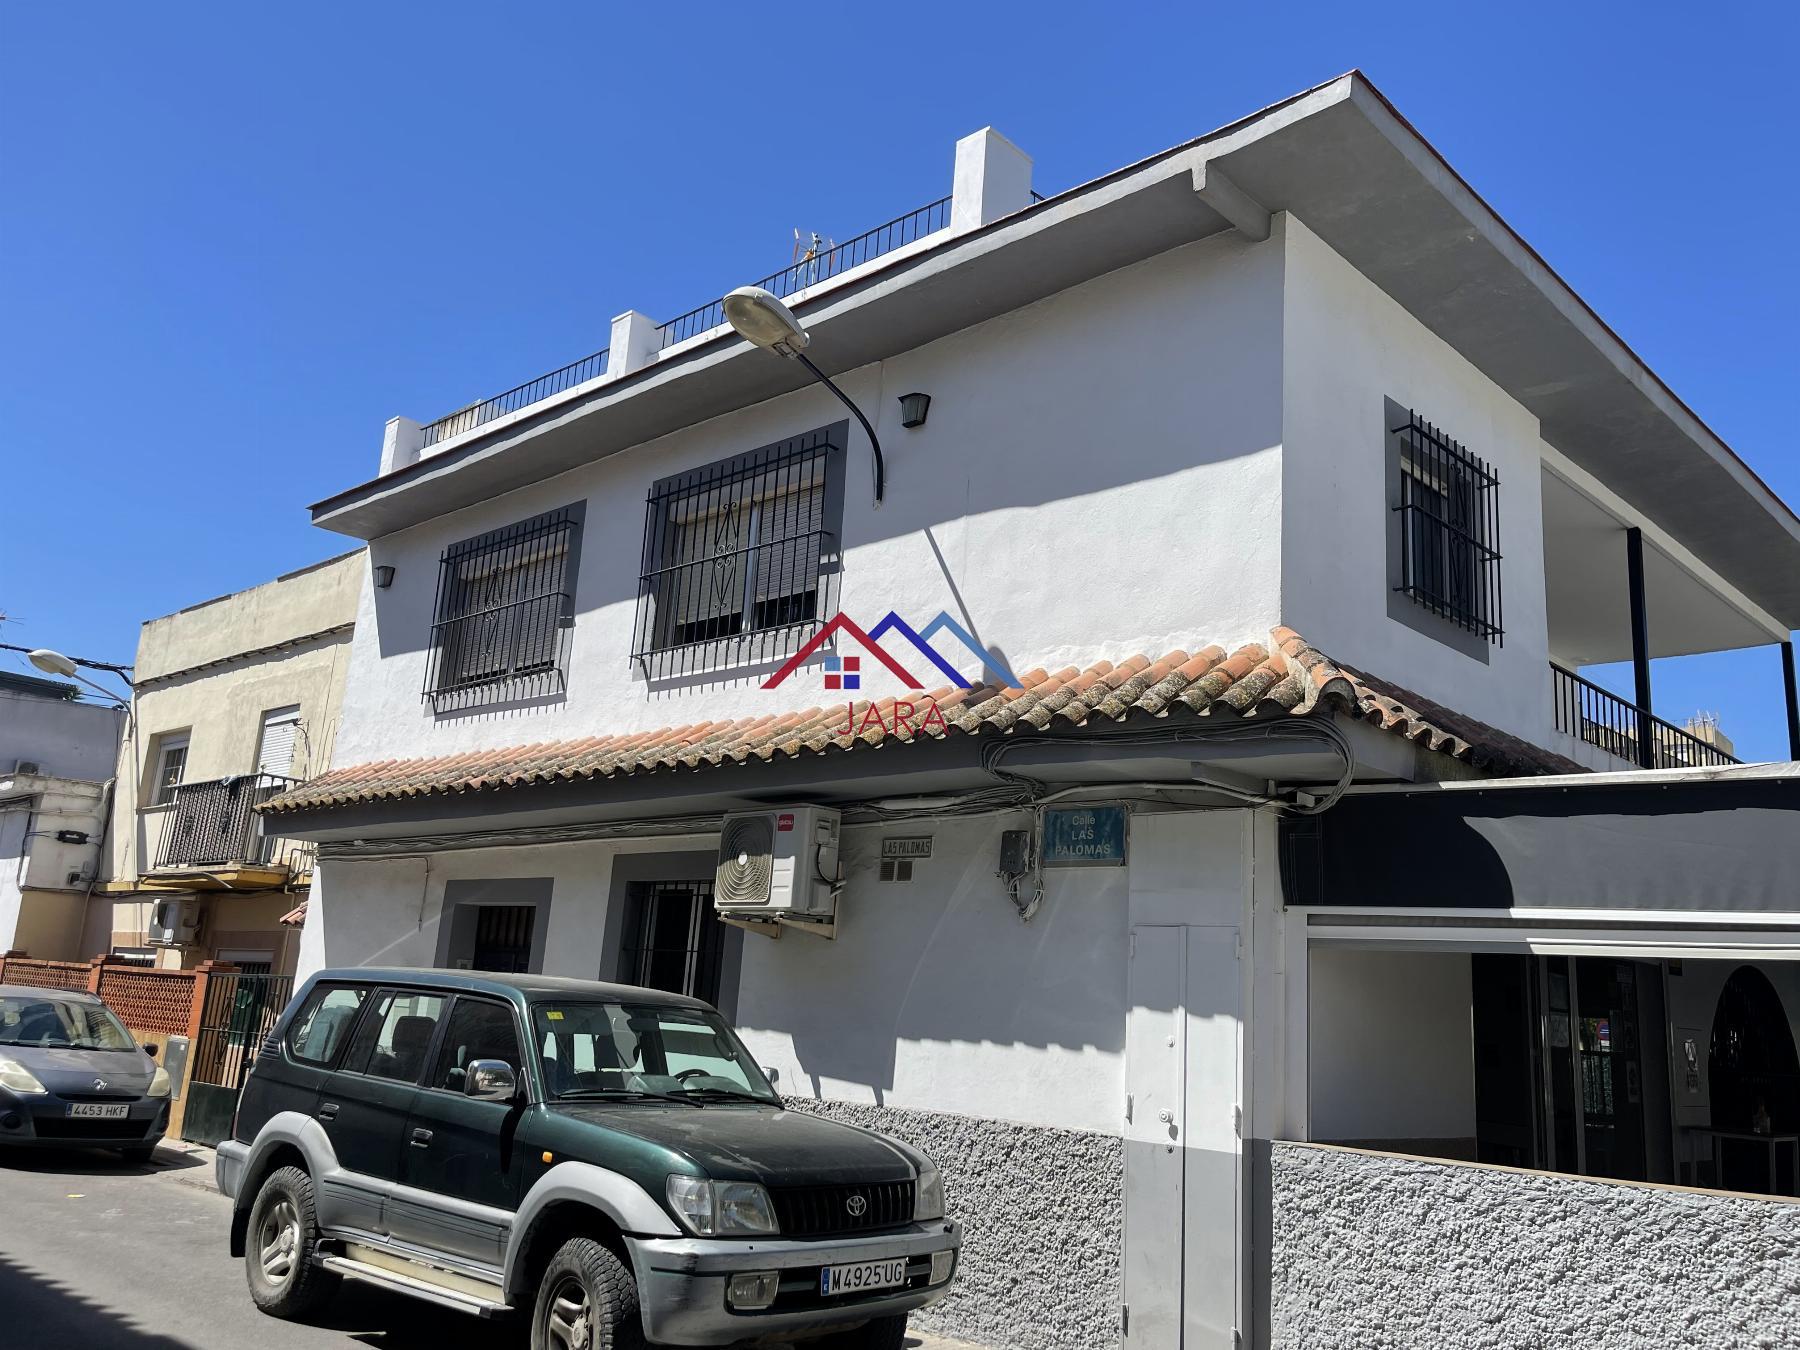 Închiriere din casă în Jerez de la Frontera